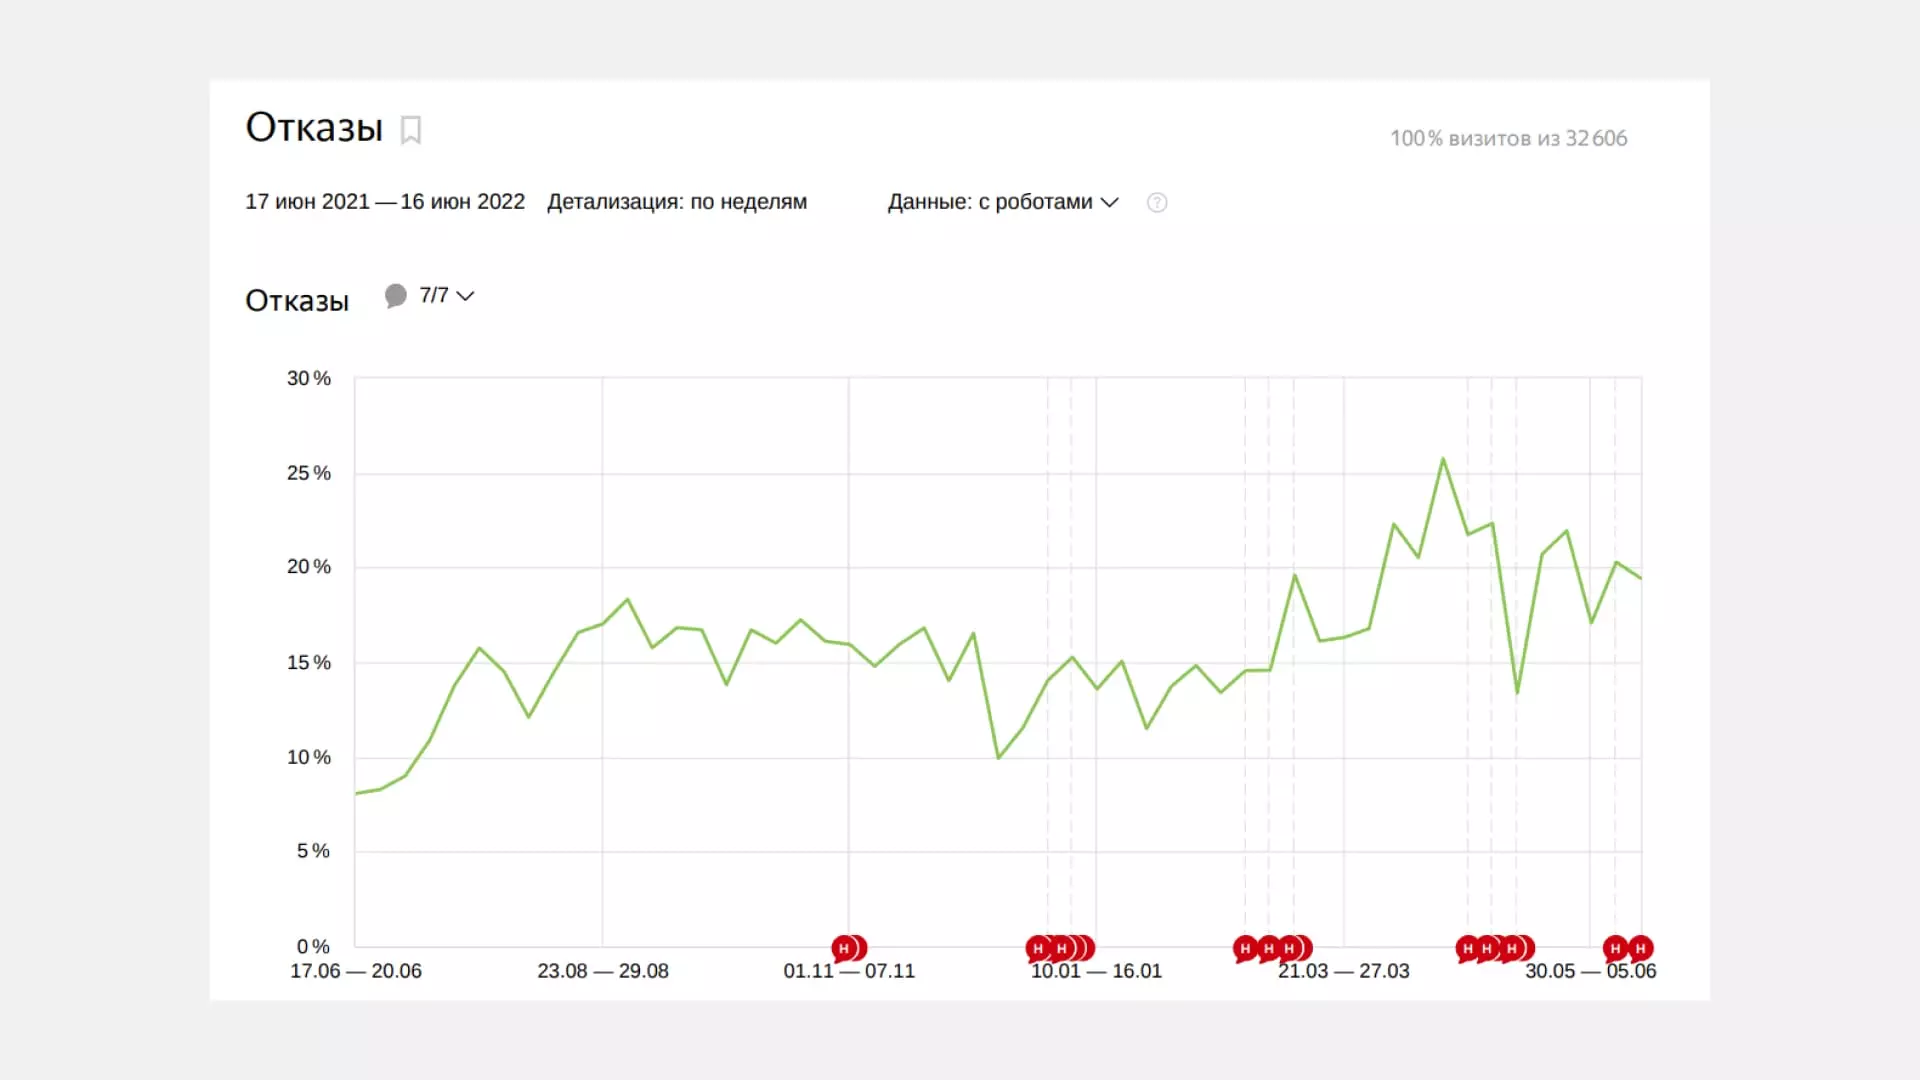 Динамика отказов за год в Яндекс.Метрике. Видно, что показатели растут, а значит, аудитория все чаще не находит нужной информации на странице